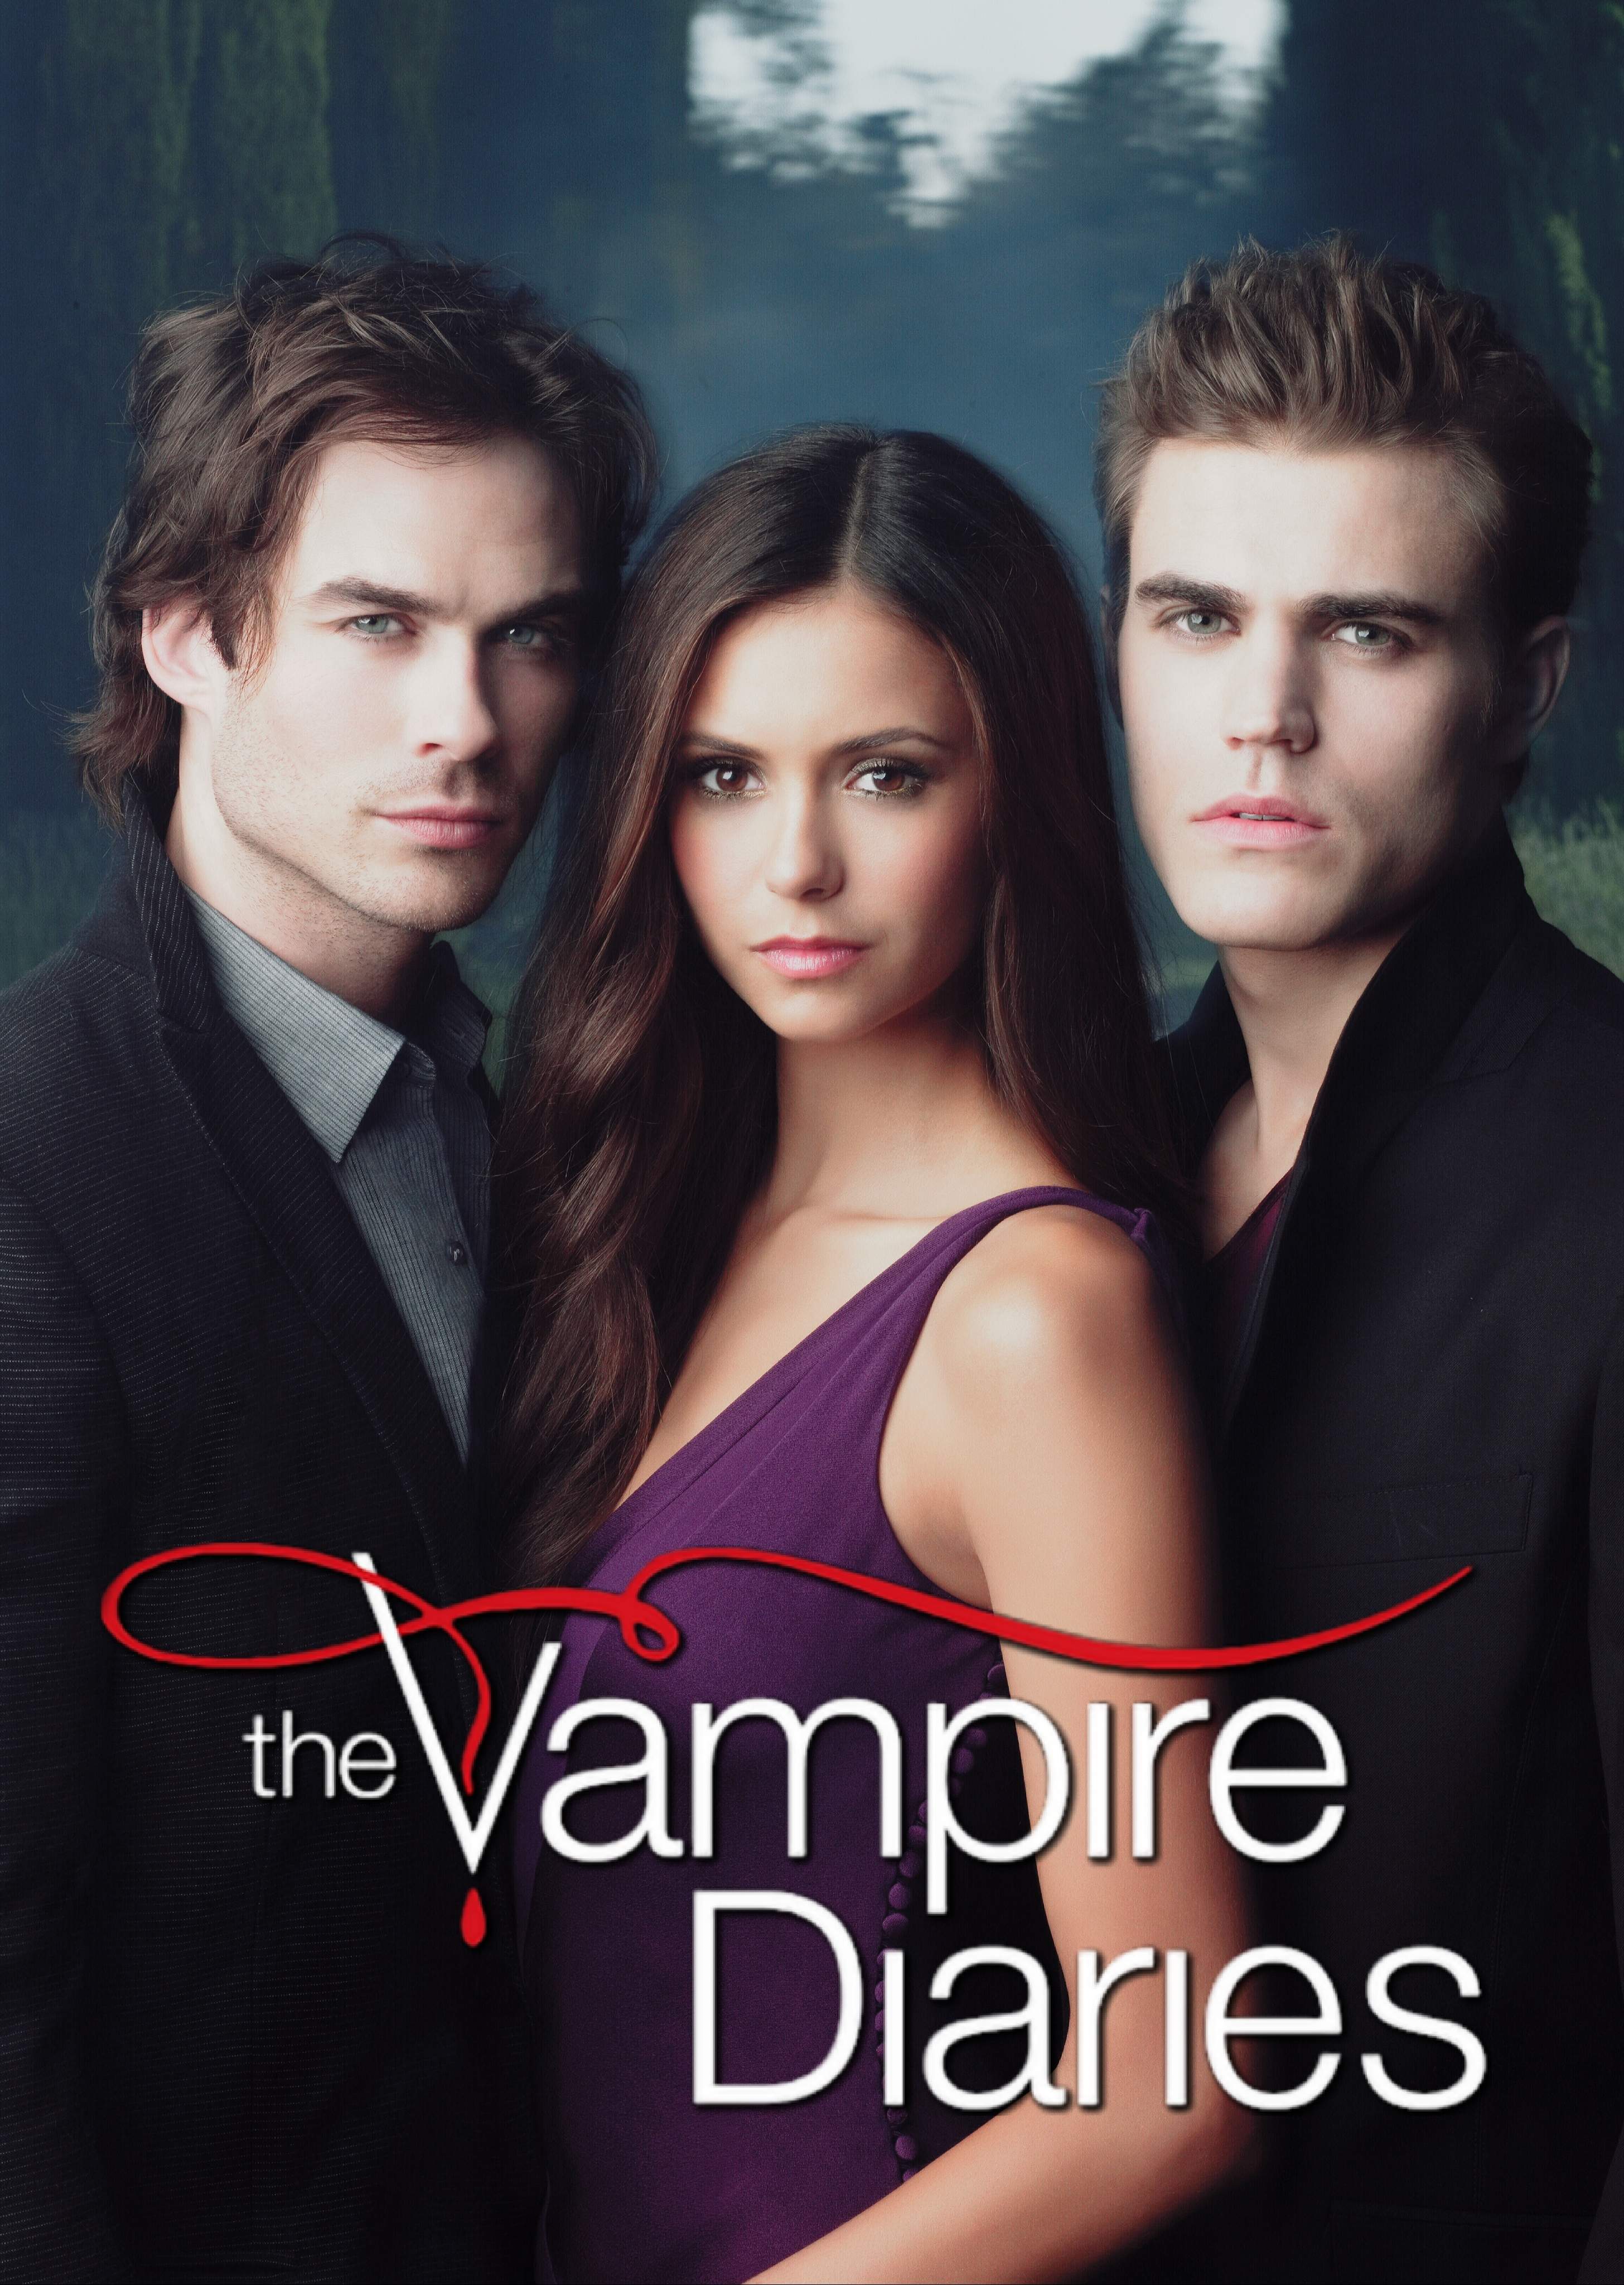 The Vampire Diaries - Wikipedia